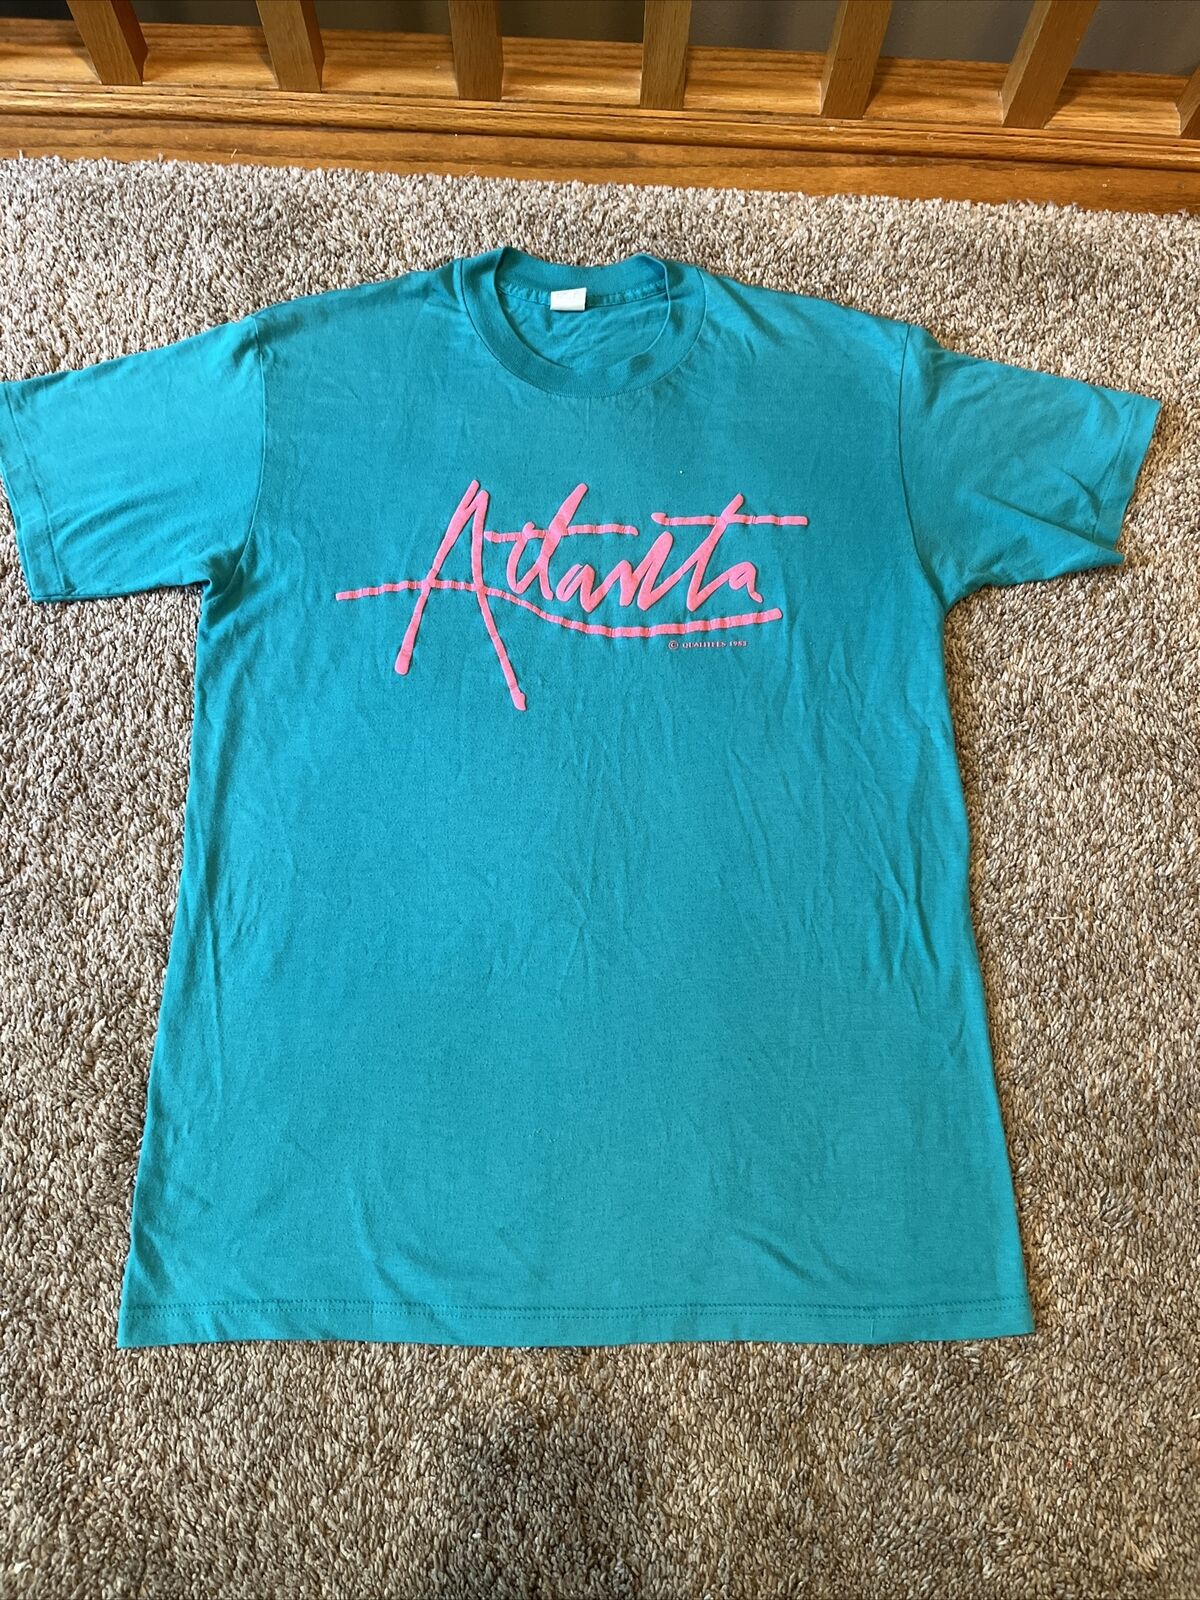 Vintage Rare 1983 Atlanta Georgia Tshirt Size XL Qualitees Retro